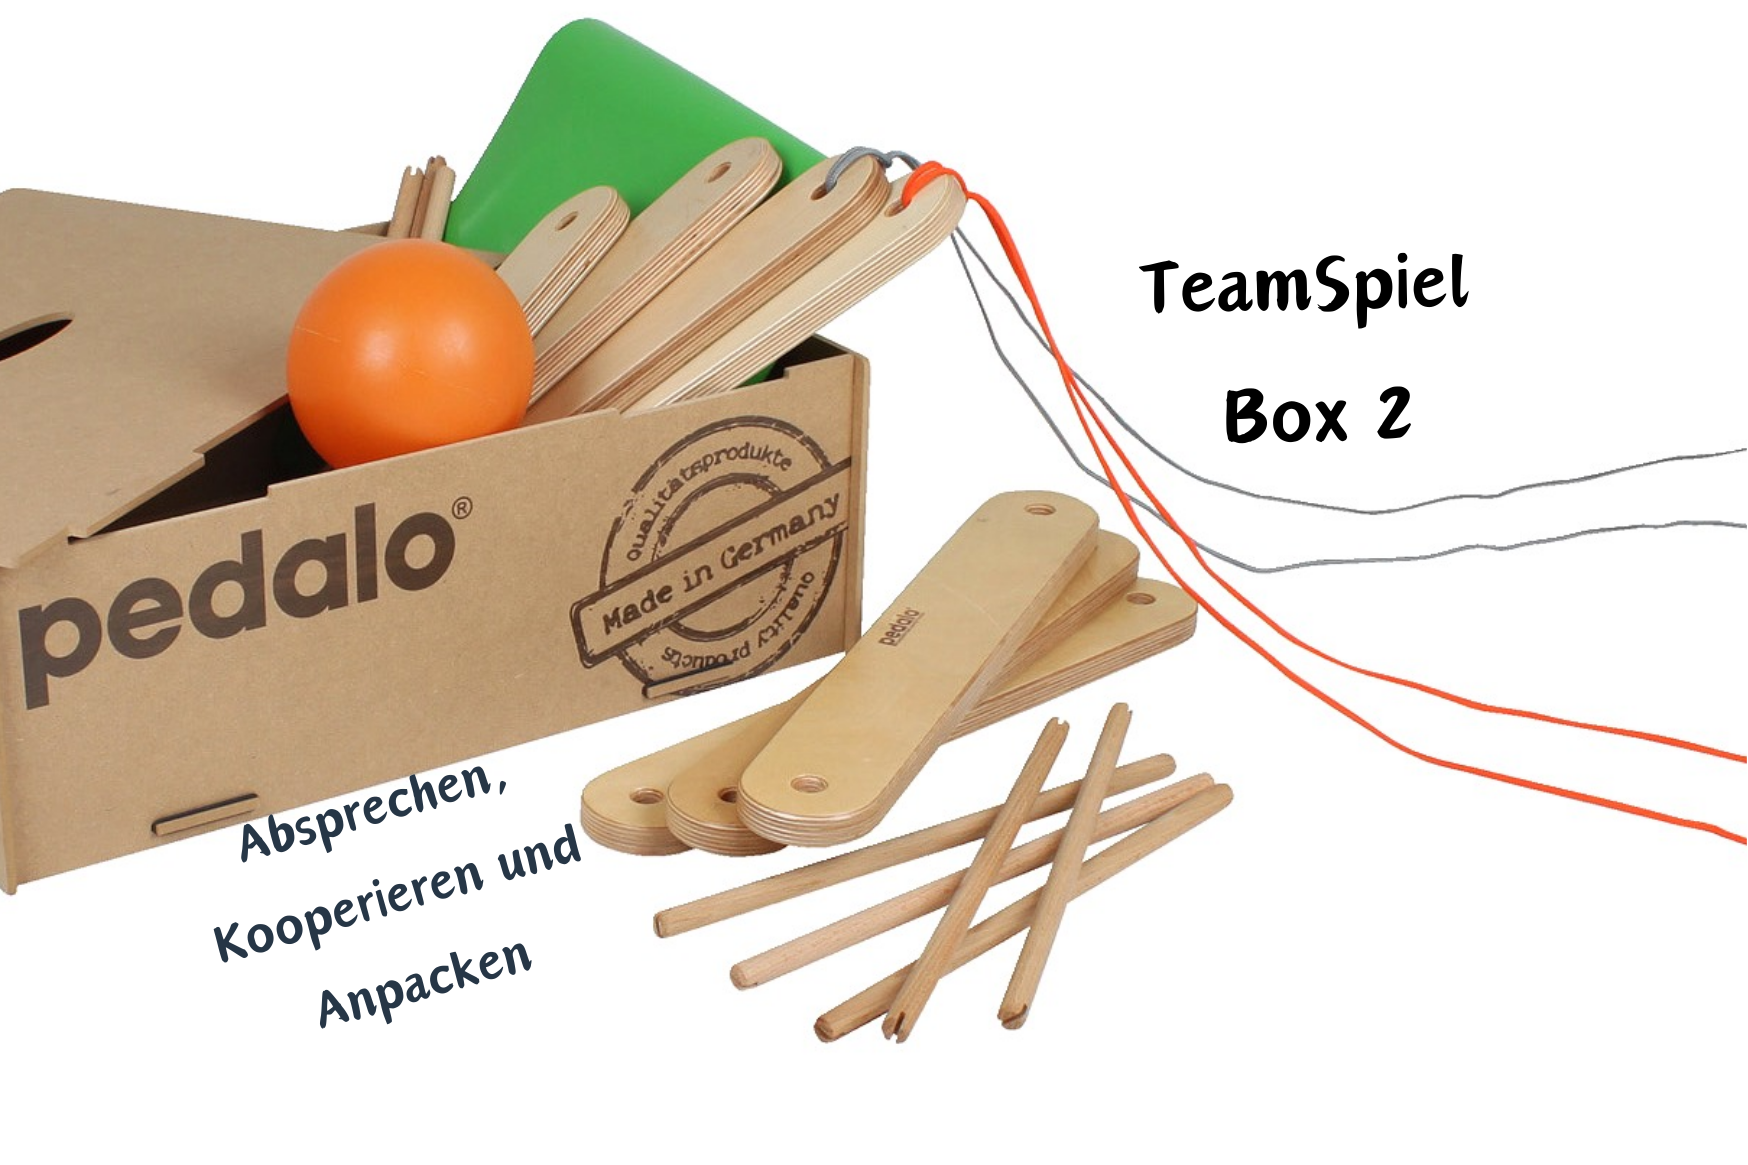 TeamSpiel Box 2